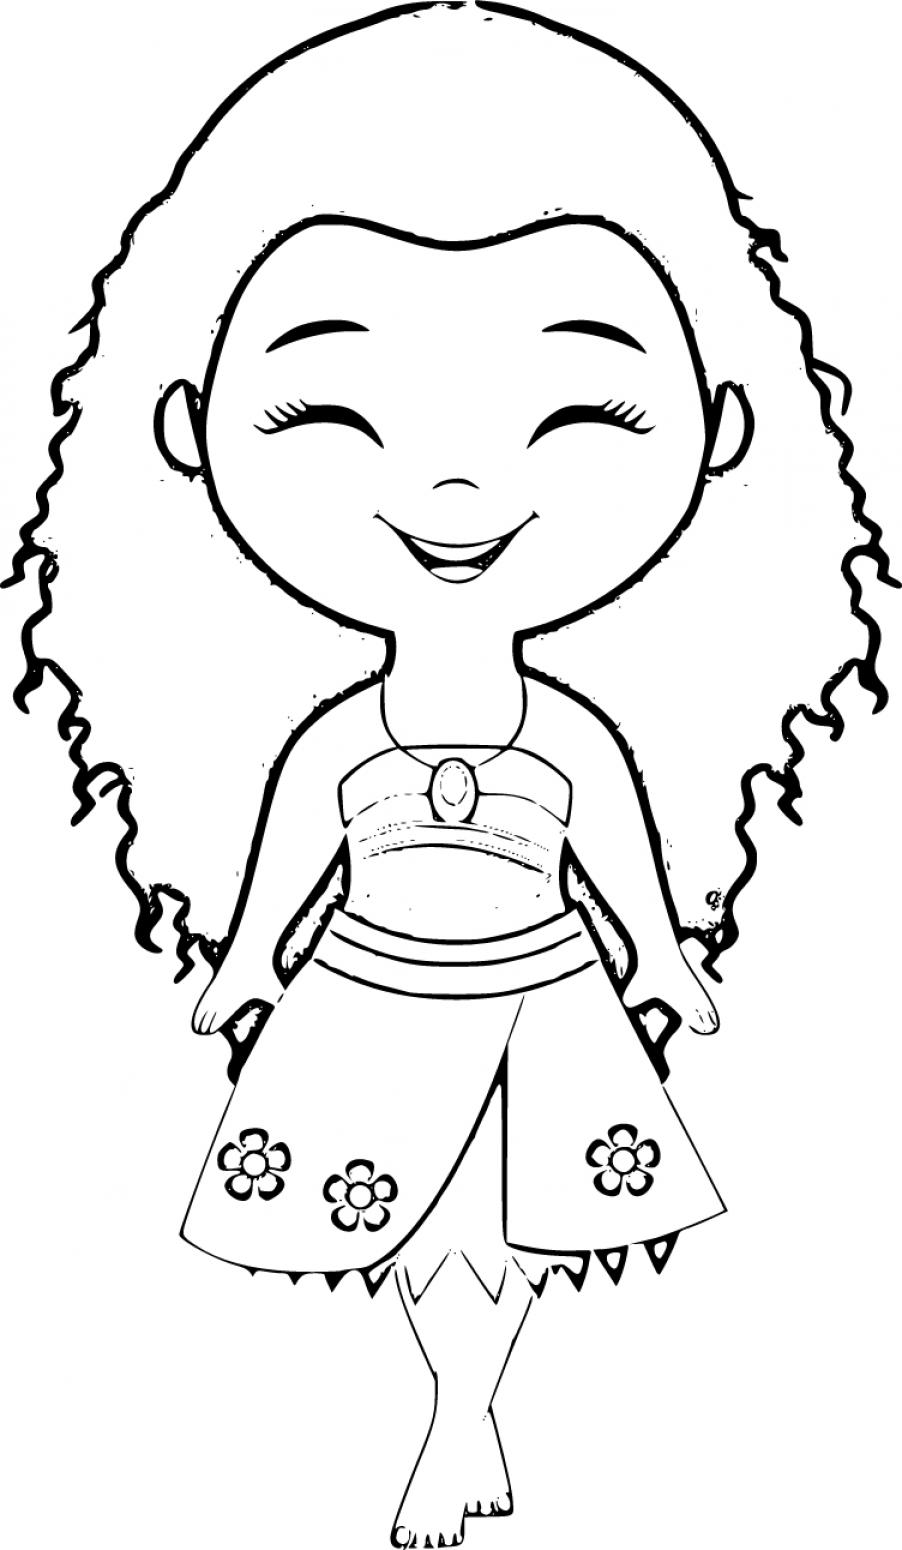 Moana as a Child Coloring Page 10 - SheetalColor.com